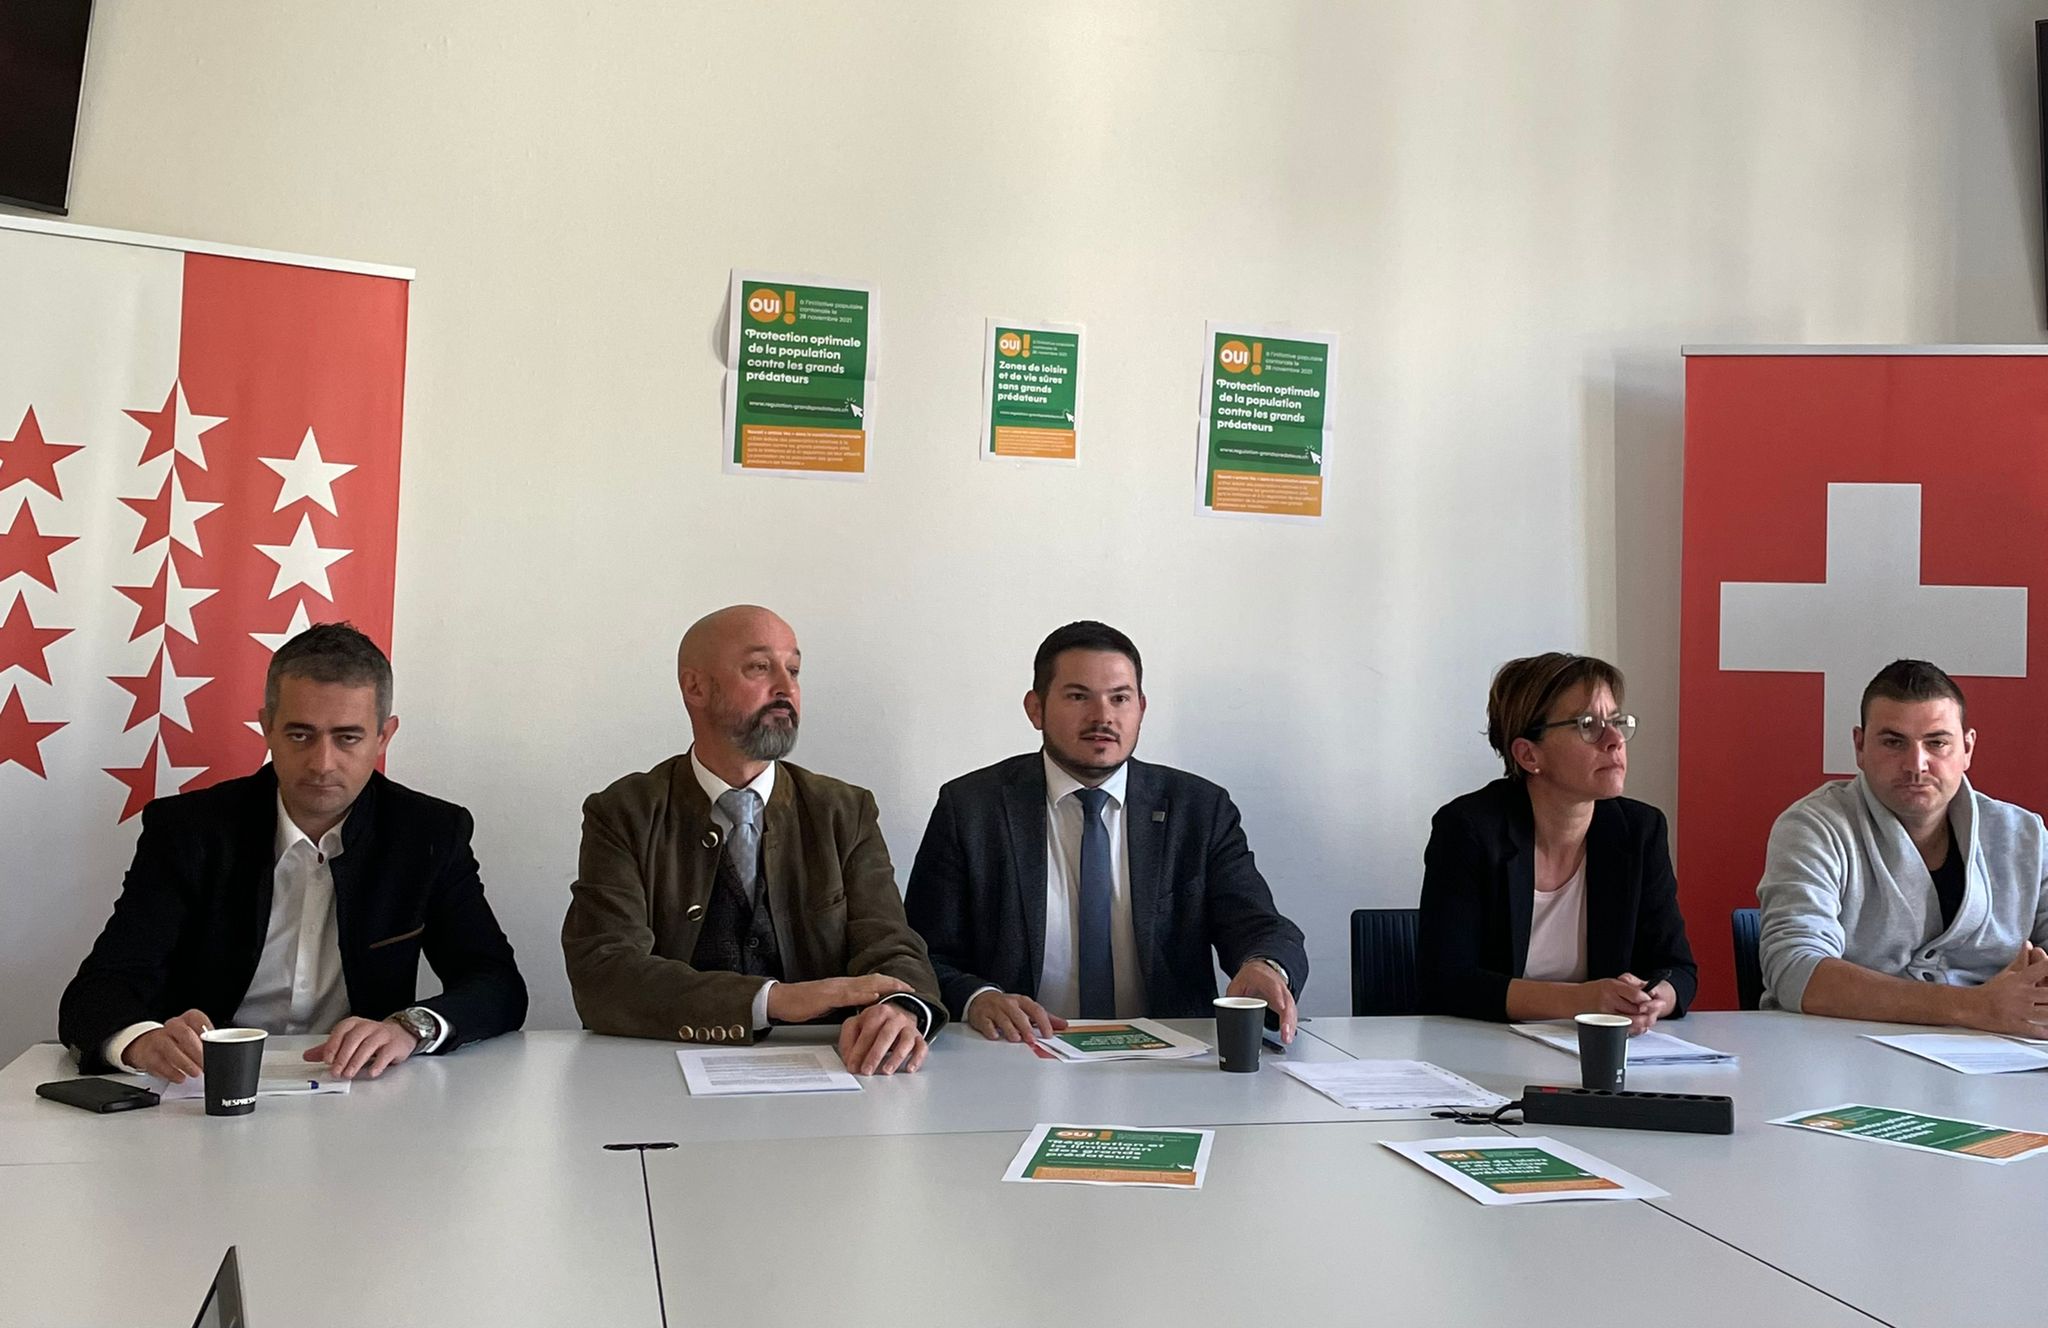 Le comité du Valais romand, en faveur de l’initiative populaire « pour un canton du Valais sans grands prédateurs », a présenté ses arguments aujourd’hui à Sion.